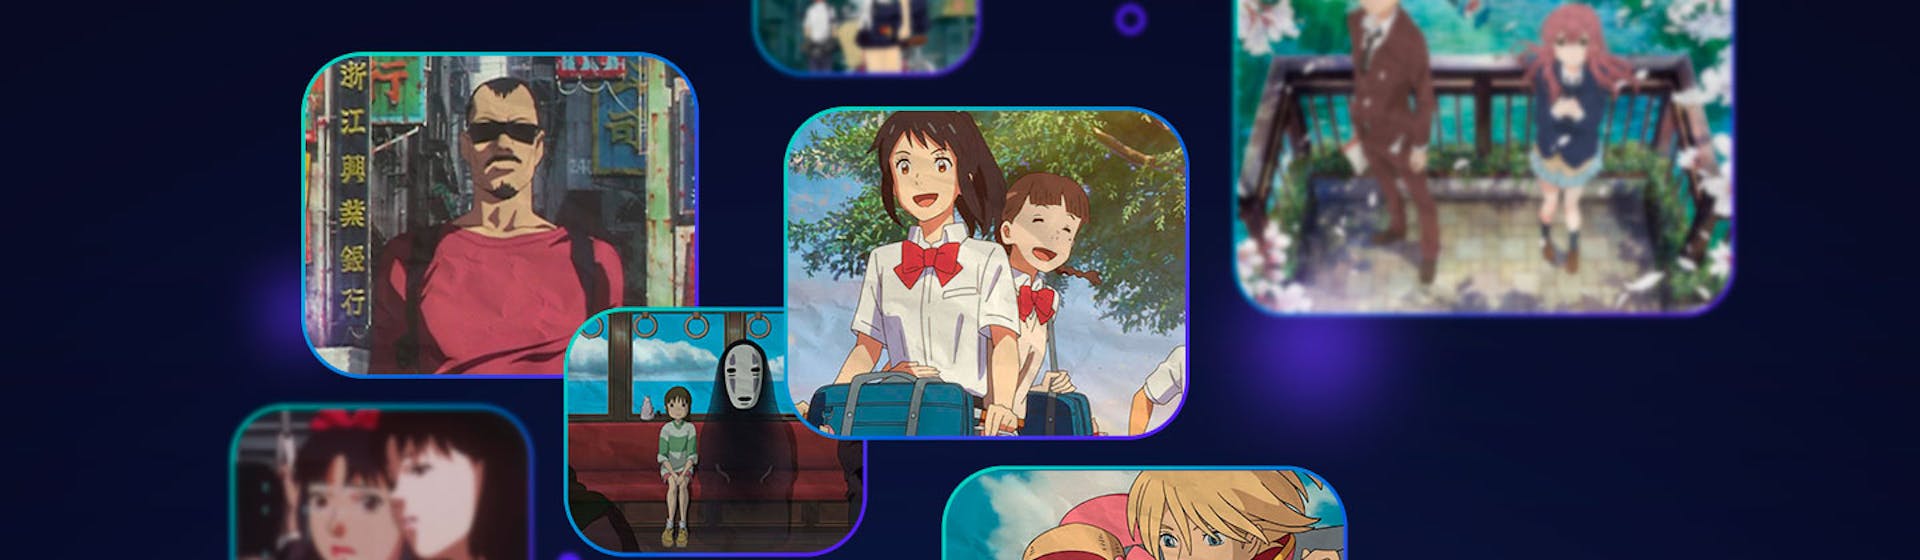 10 películas de animación japonesas que te harán olvidar a Disney